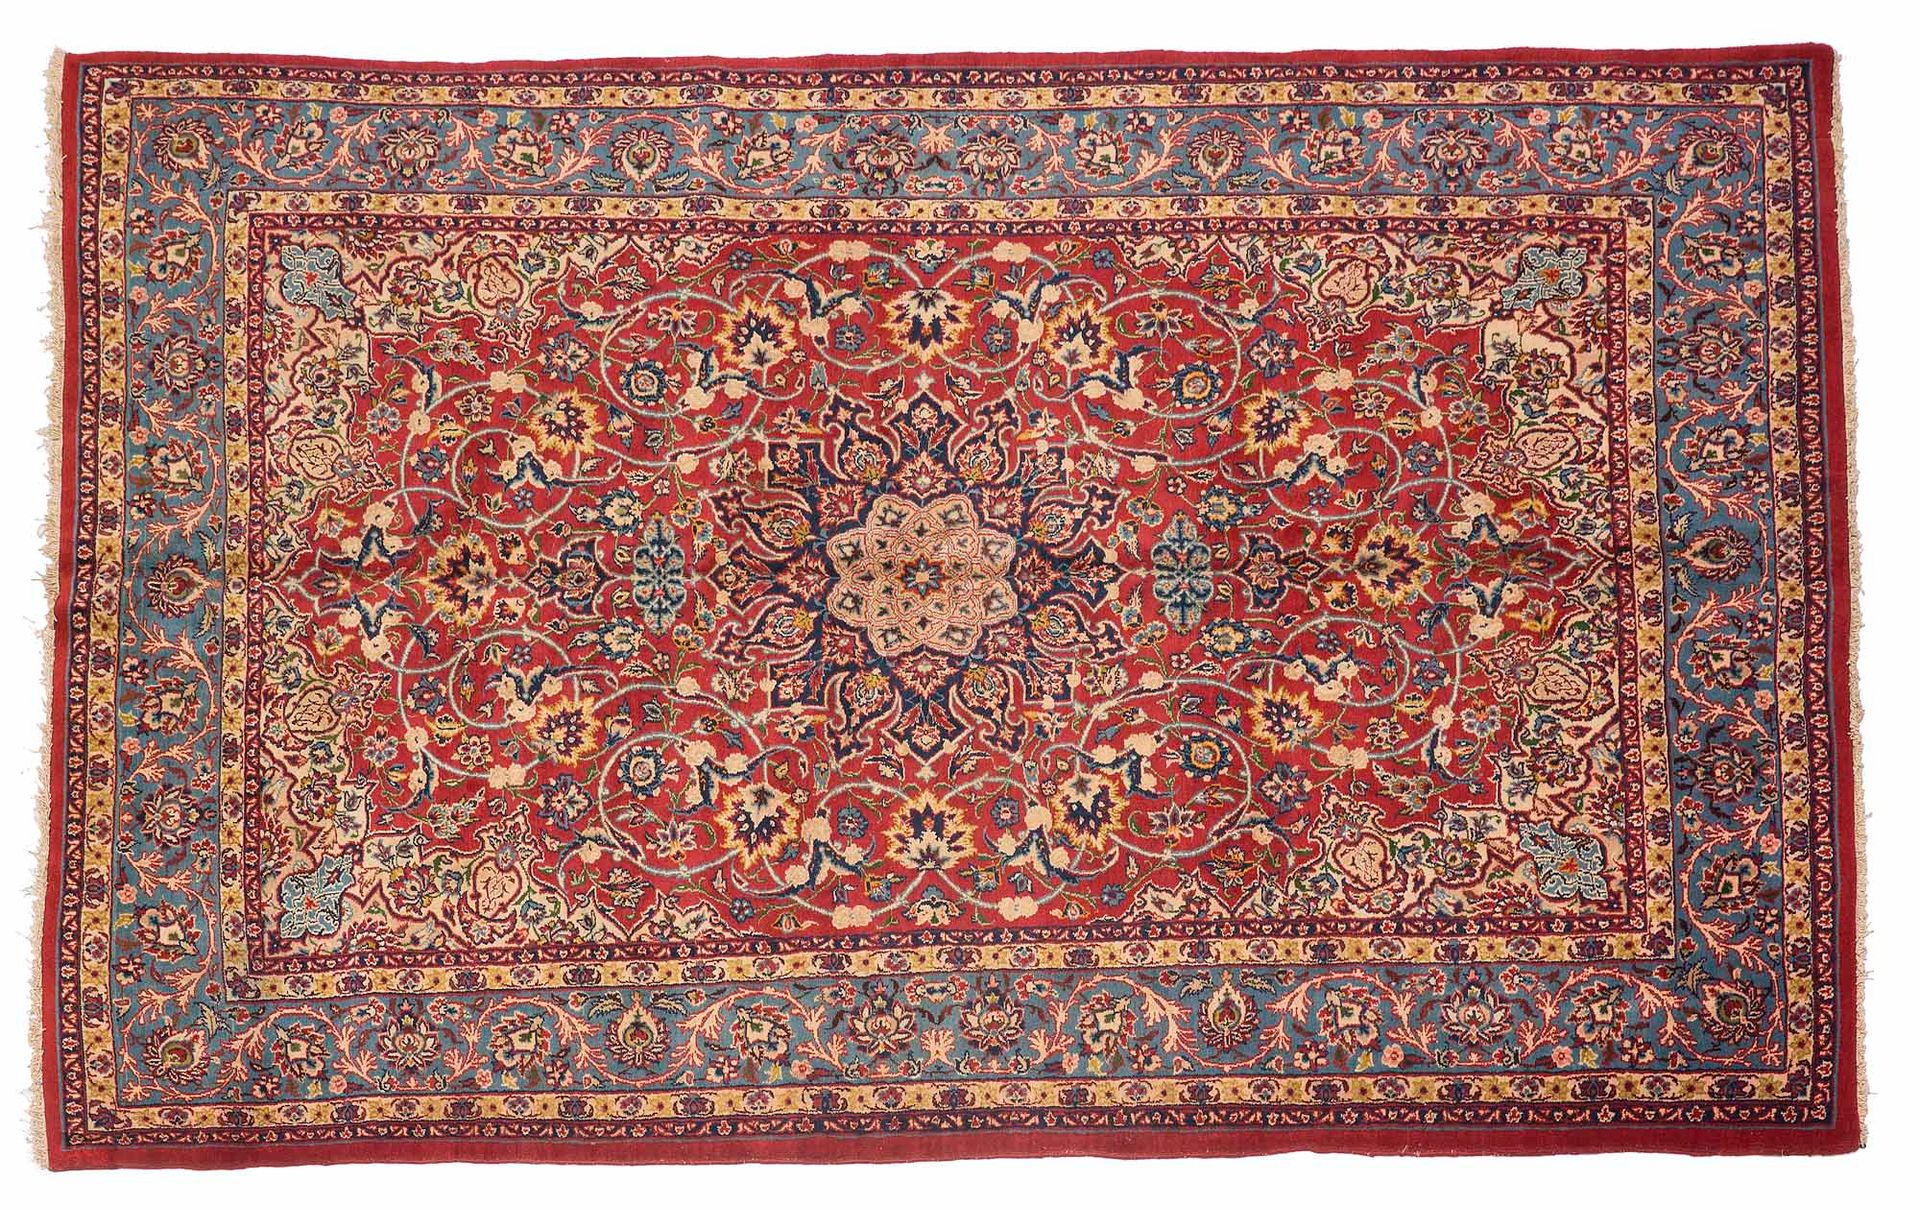 Null ISPAHAN地毯（伊朗），沙赫时期，20世纪中期

尺寸：288 x 195厘米。

技术特点 : 羊毛丝绒，棉质基础。

一个长方形的砖红色场地，&hellip;